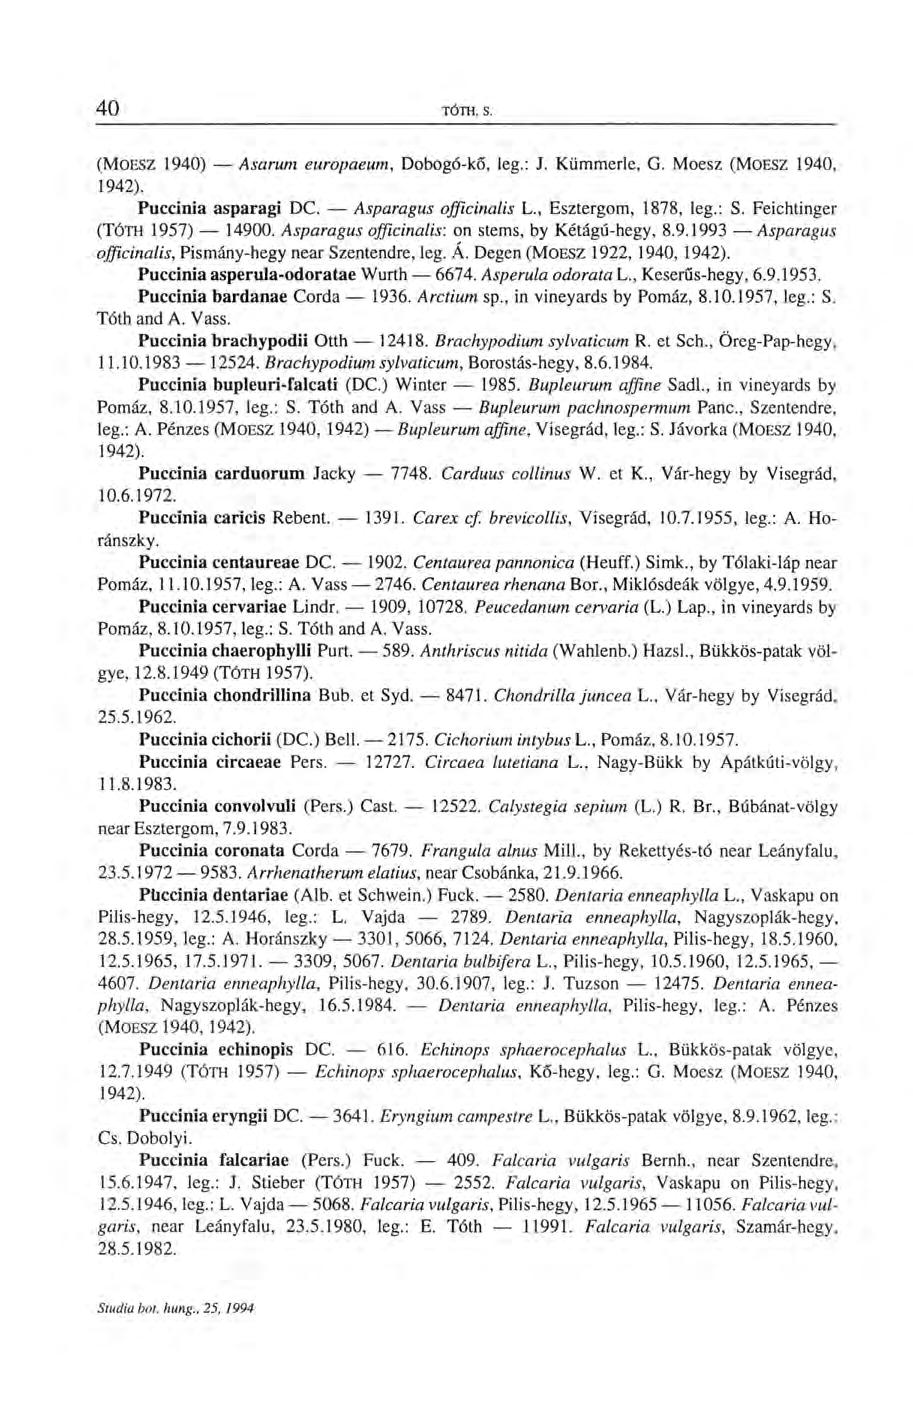 (MOESZ 1940) Asarum europaeum, Dobogó-kő, leg.: J. Kümmerle, G. Moesz (MOESZ 1940, 1942). Puccinia asparagi DC. Asparagus officinalis L., Esztergom, 1878, leg.: S. Feichtinger (TÓTH 1957) 14900.